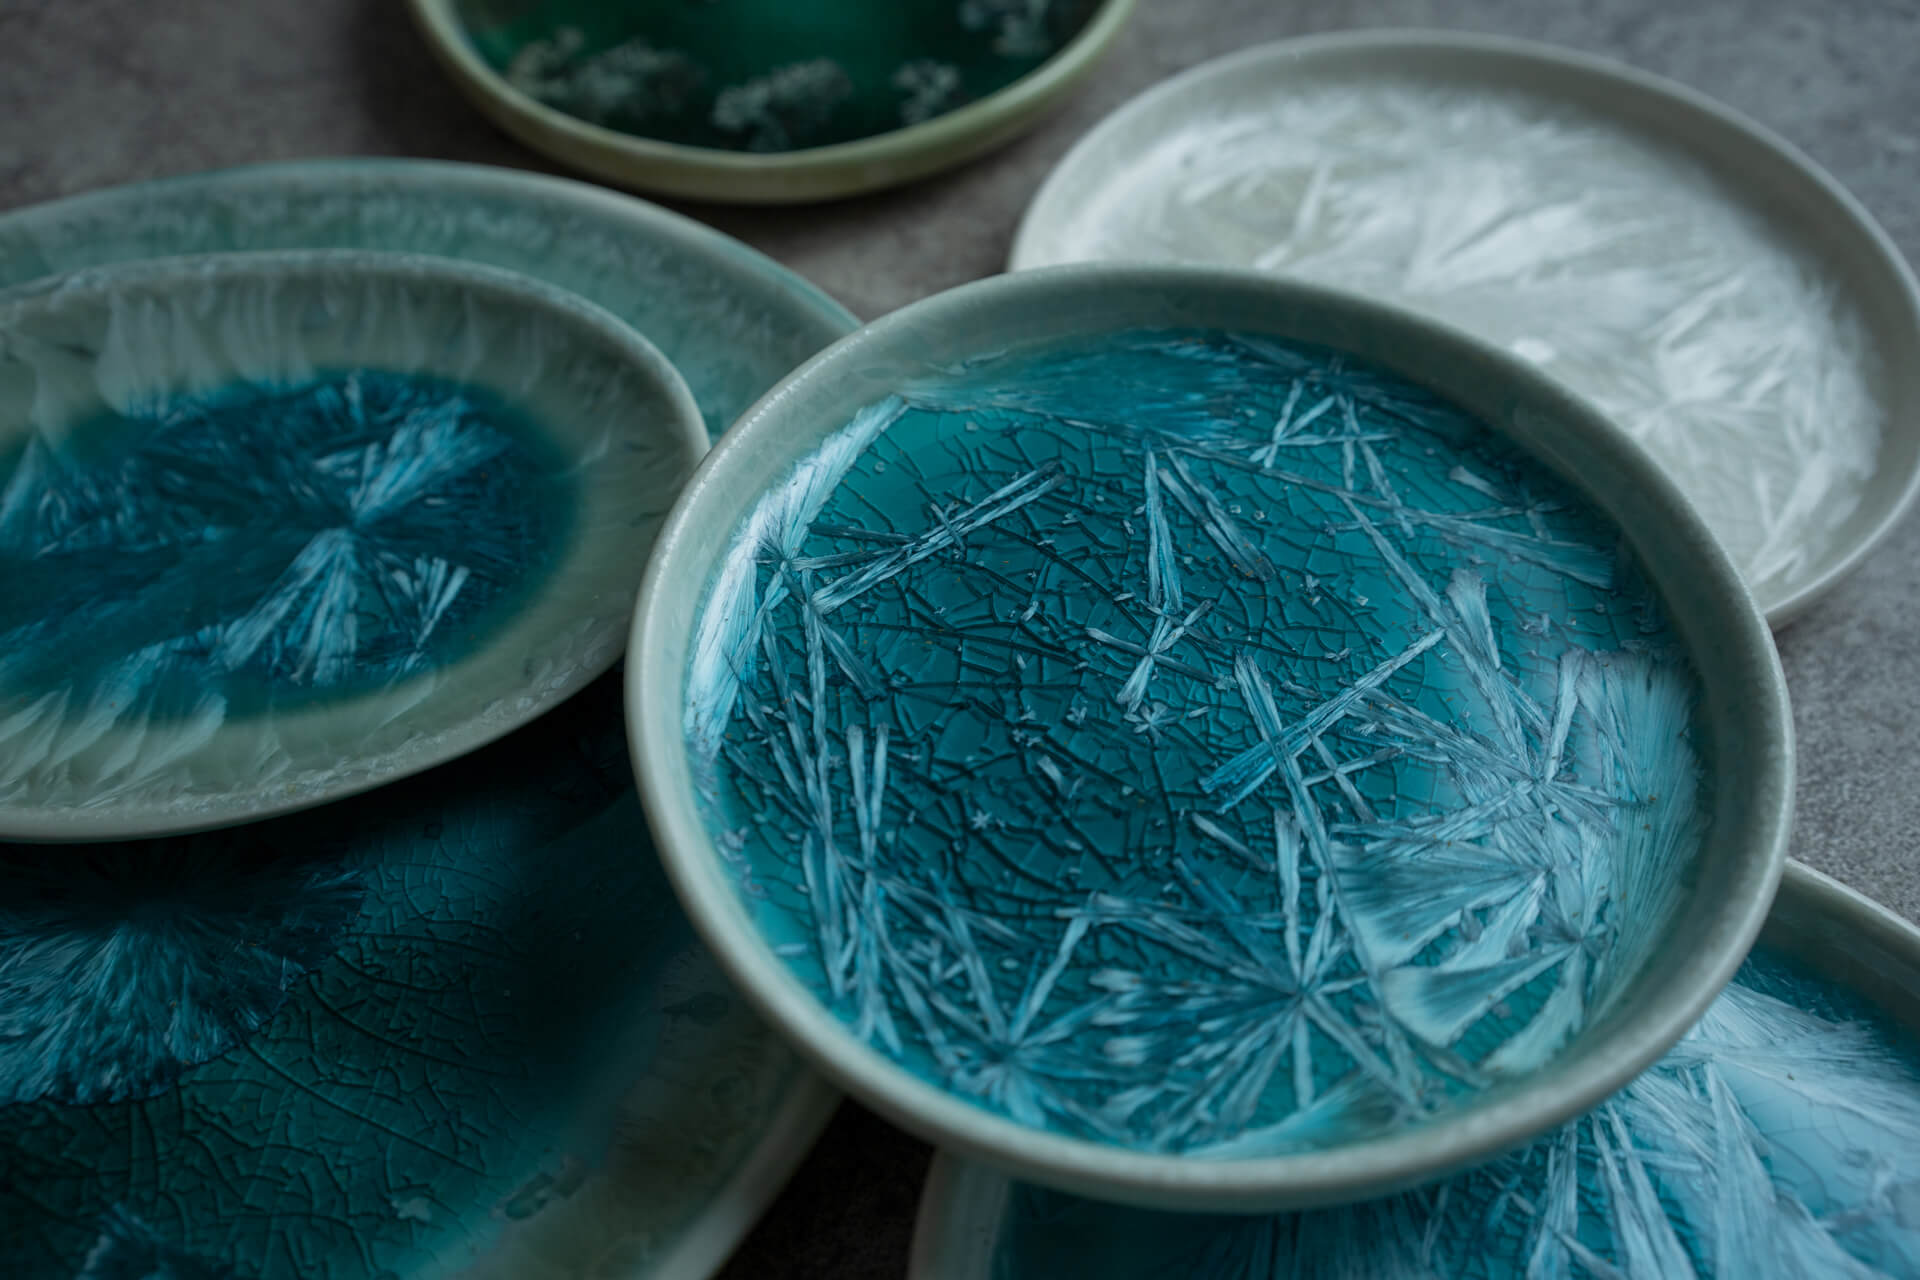 ジャンピエールコヒュートの水面に氷が張ったようなデザインの陶器のディテール